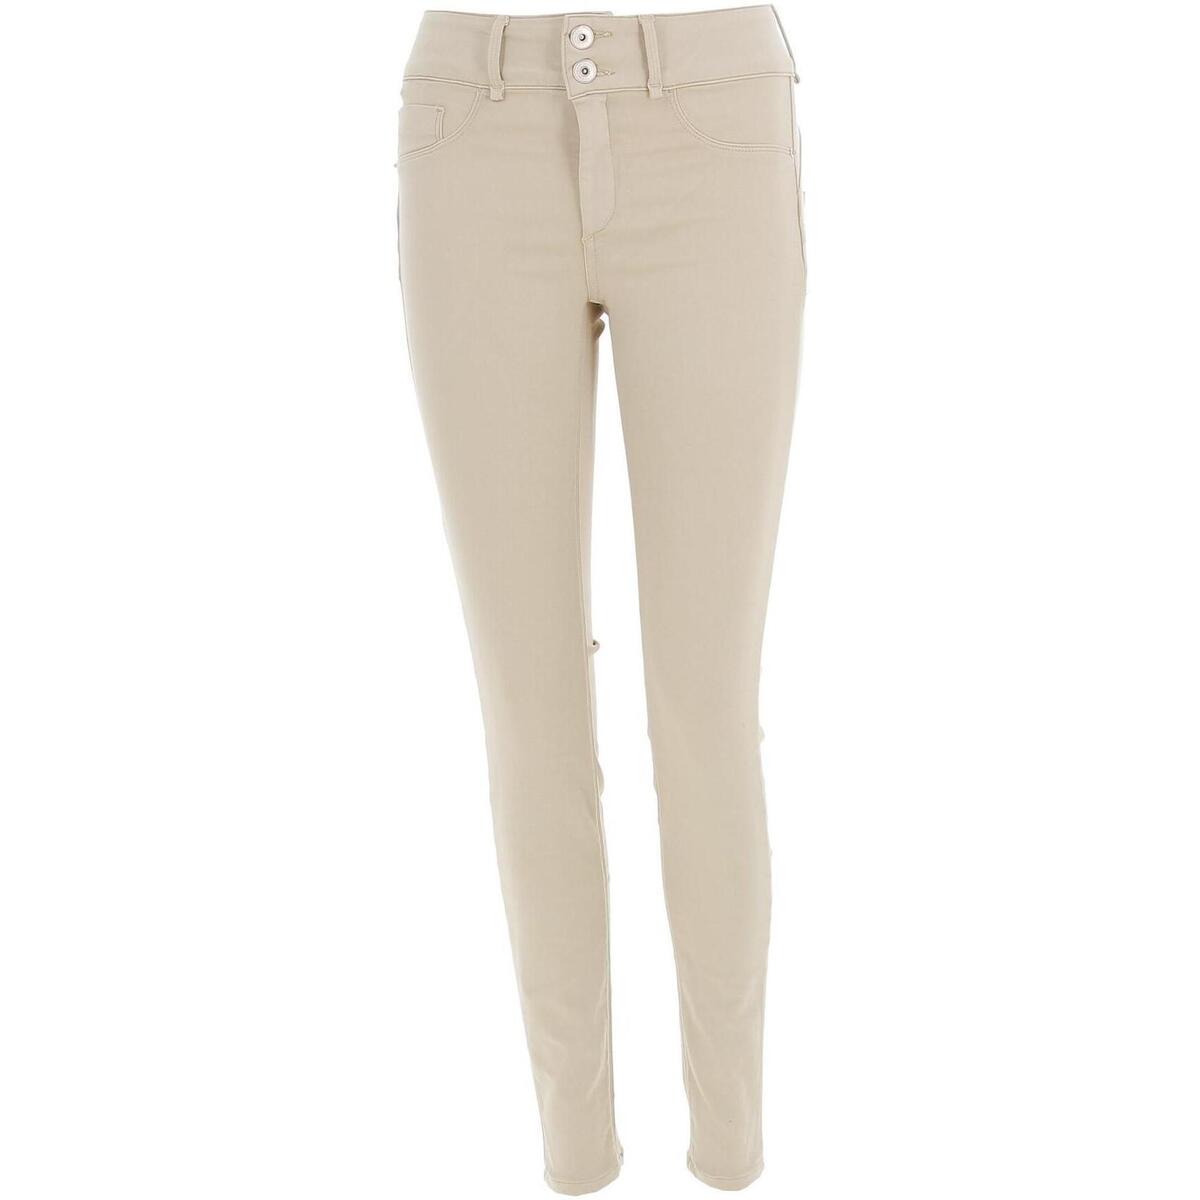 Vêtements Femme victoria victoria beckham arizona jeans item One size double up Beige